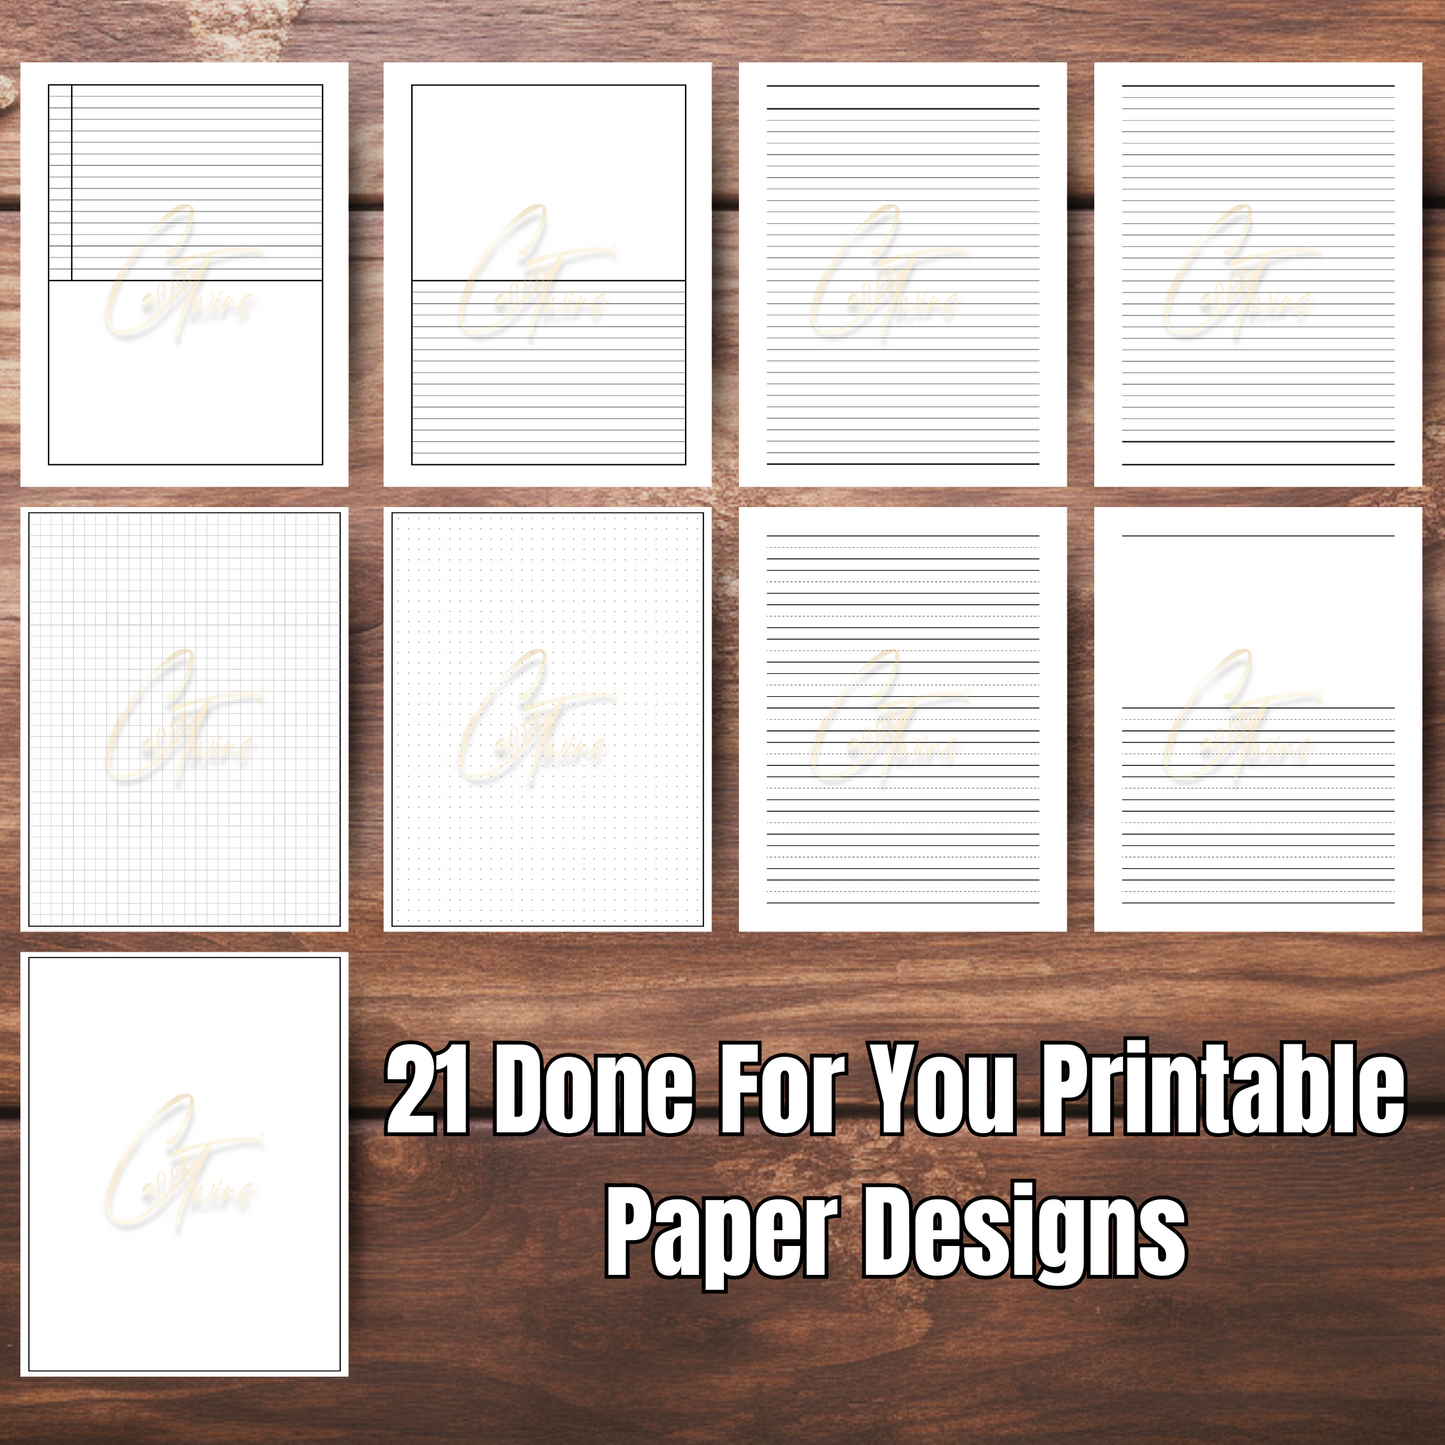 Boss | Editable Journal PLR Kit with a Bonus Hyperlinked Planner | Fully Editable Canva Templates